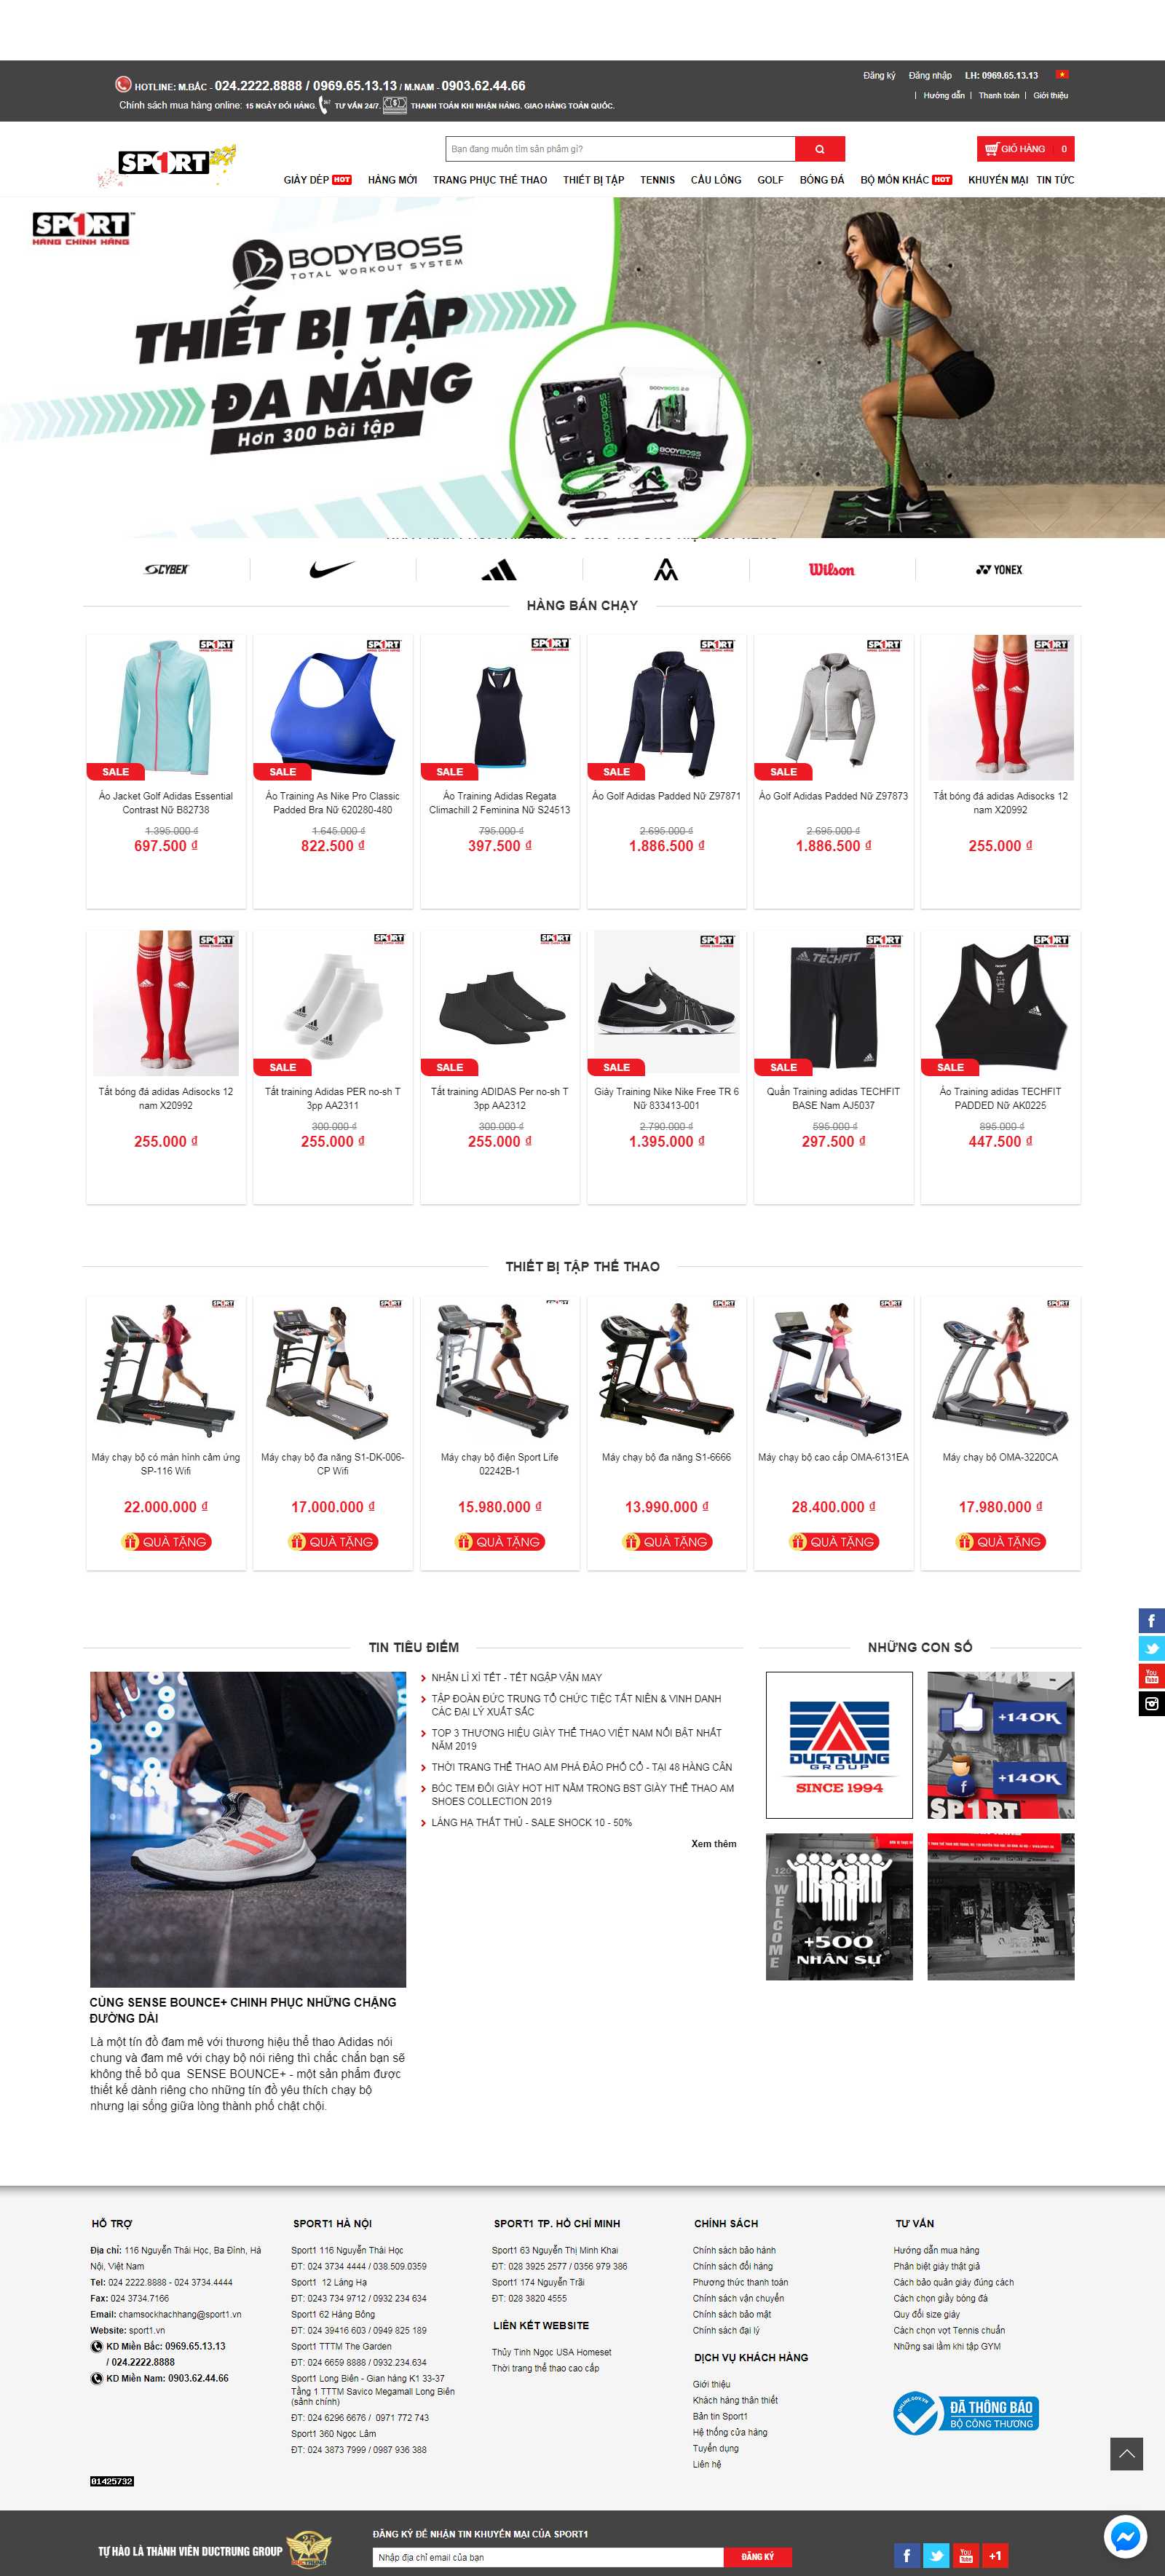 Thiết kế Website máy chạy bộ - www.sport1.vn